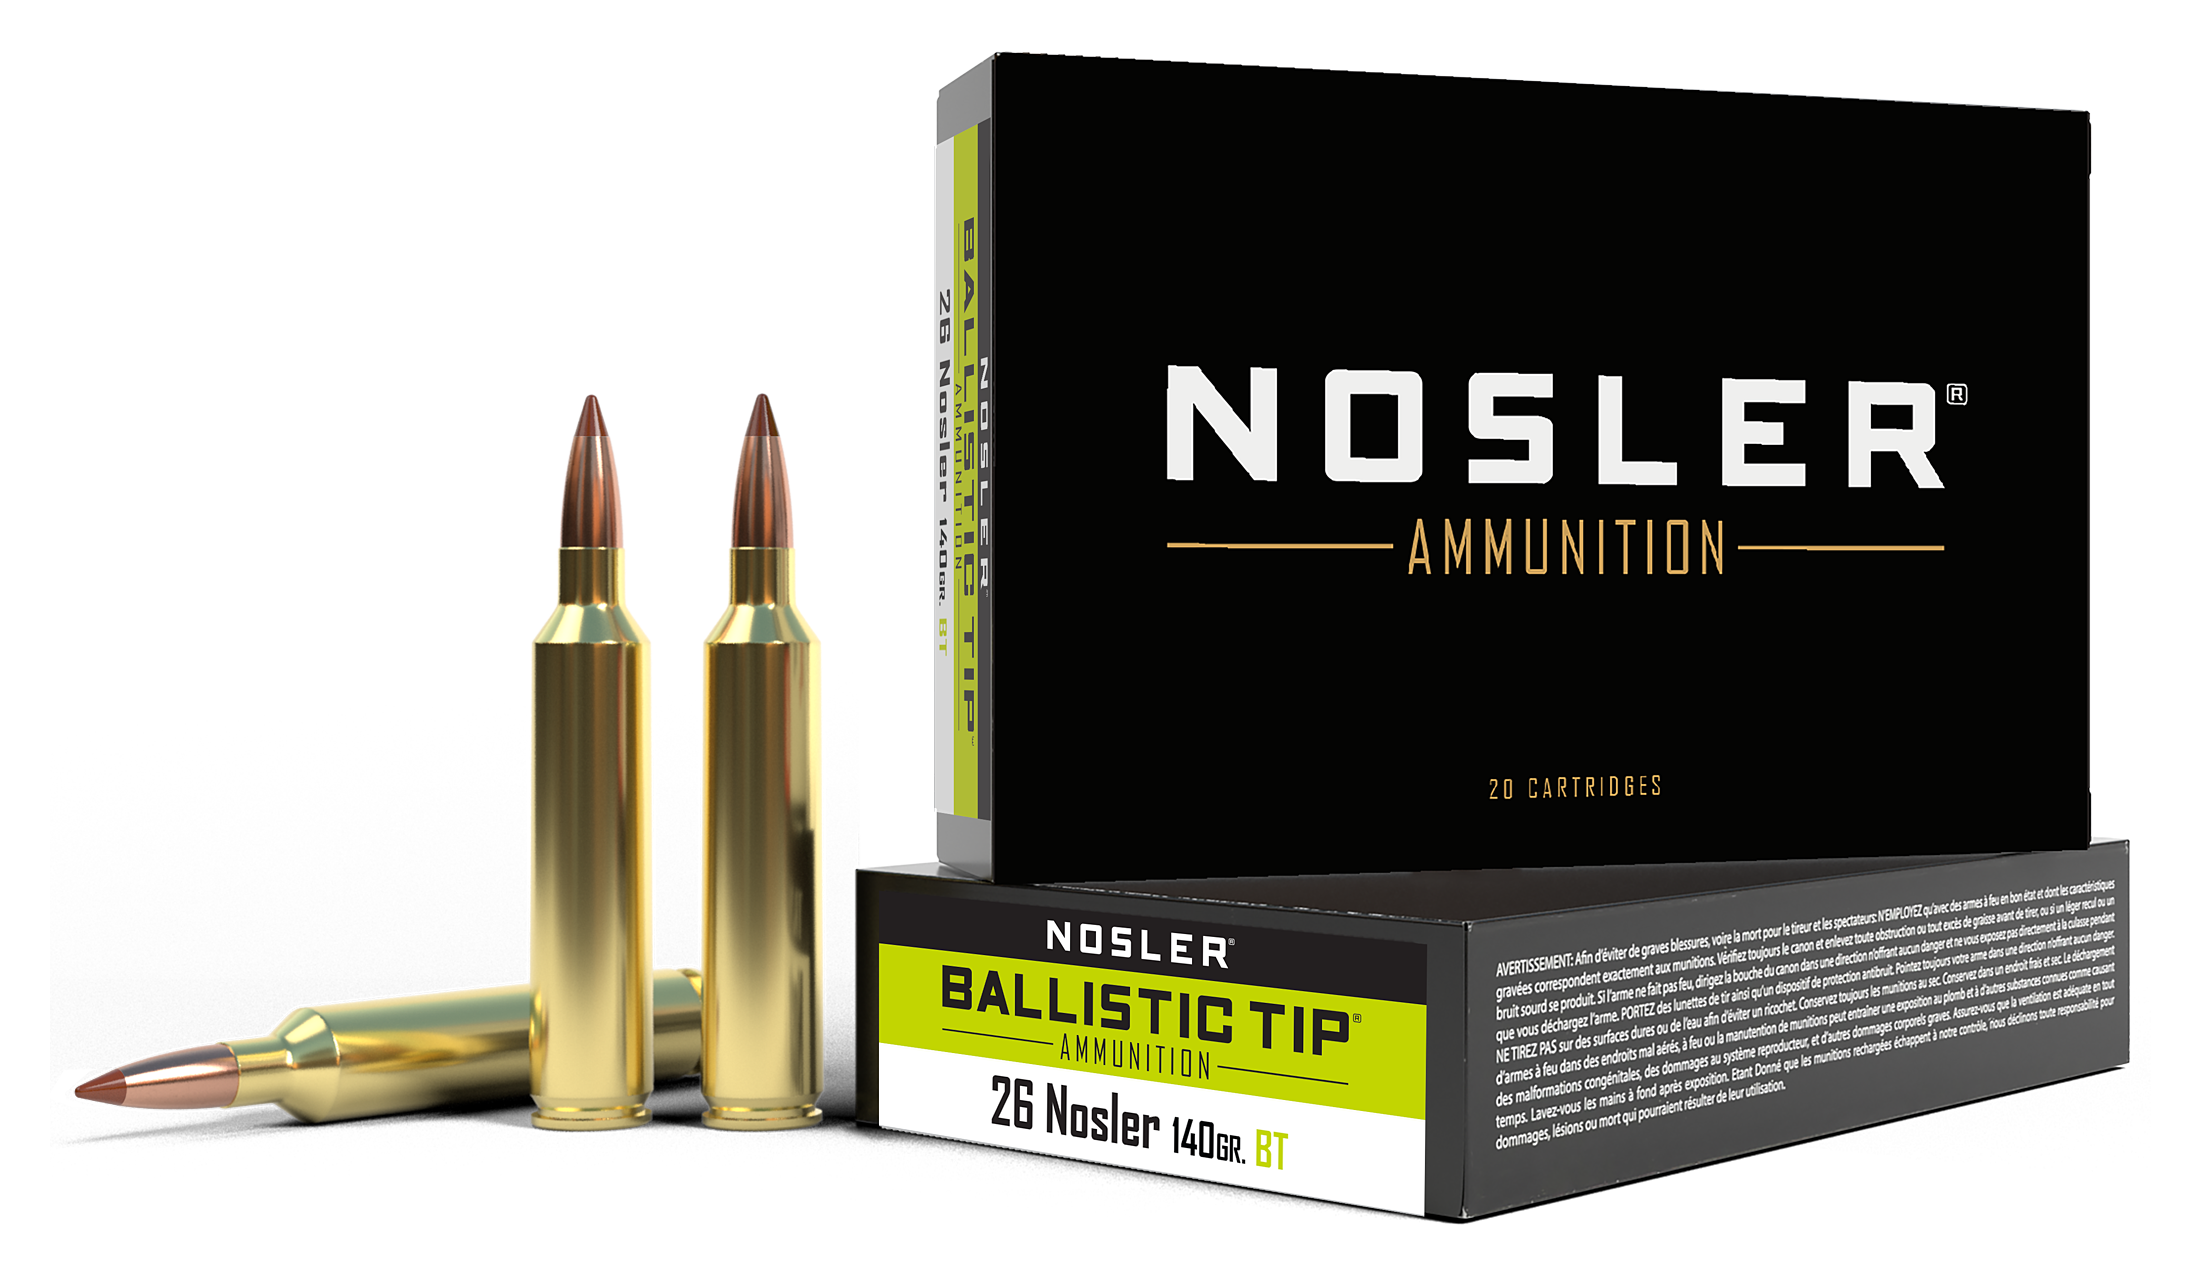 Nosler Ballistic Tip .26 Nosler 140 Grain Rifle Ammo